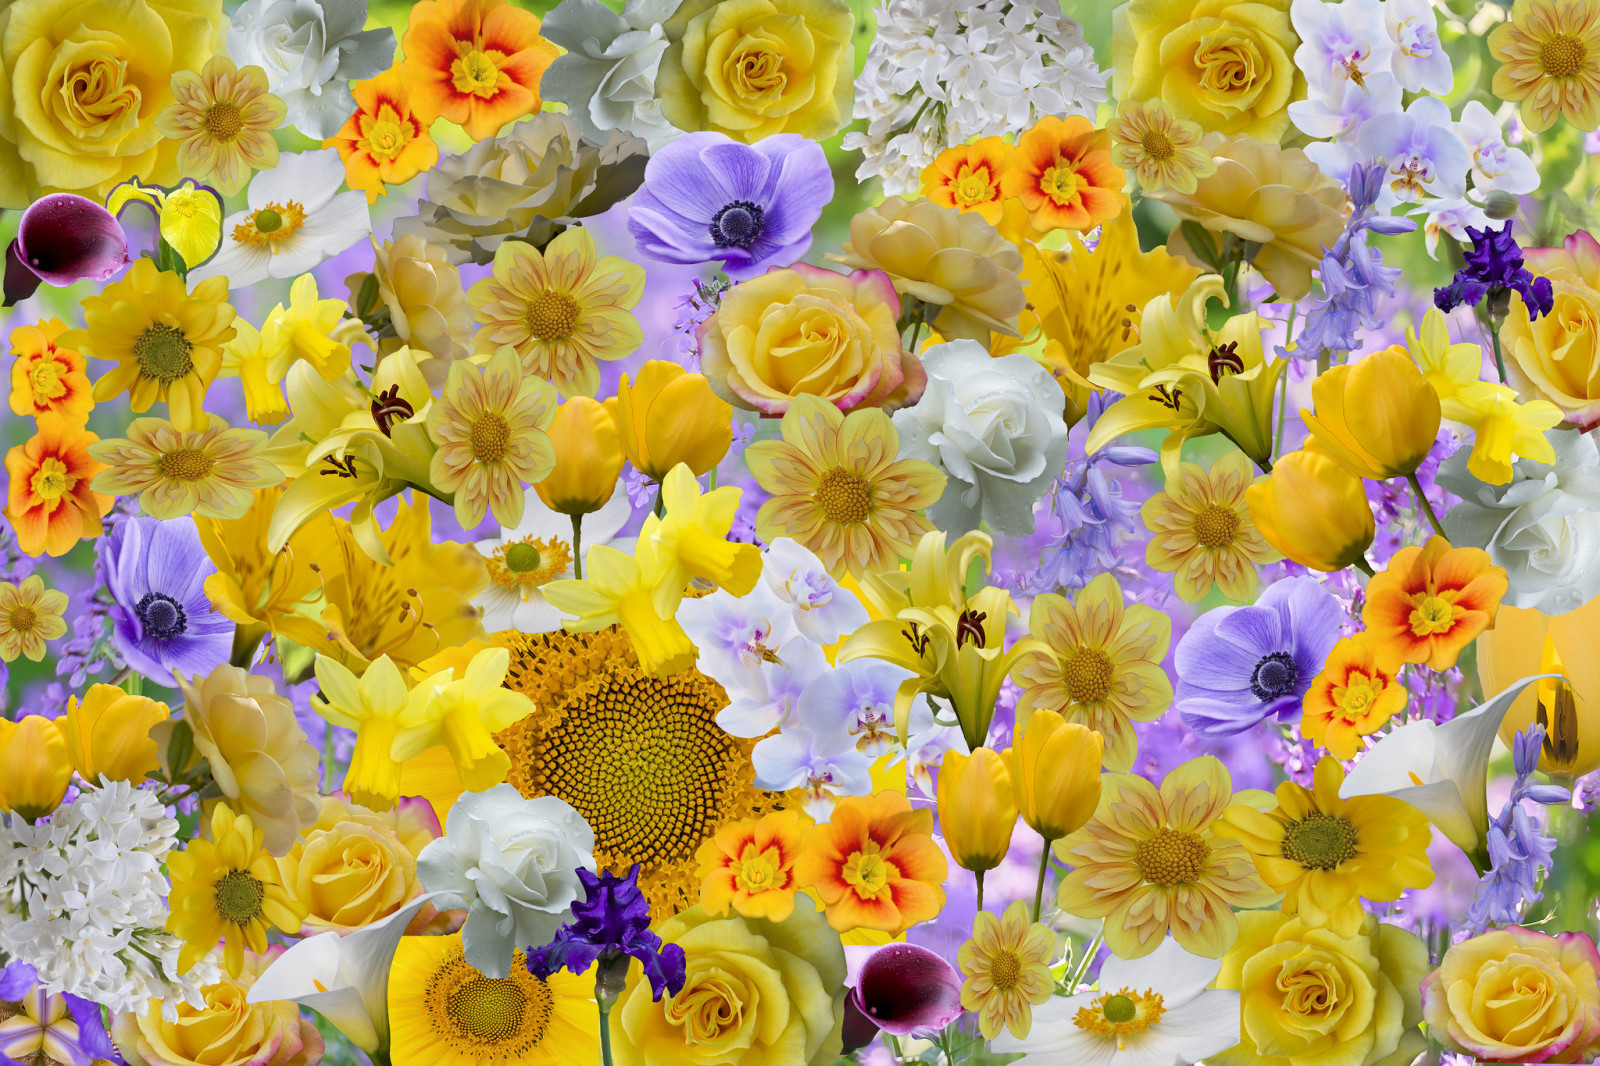 ดอกไม้, ดอกกุหลาบ, กลีบดอก, ภาพปะติด, ดอกทานตะวัน, ม่านตา